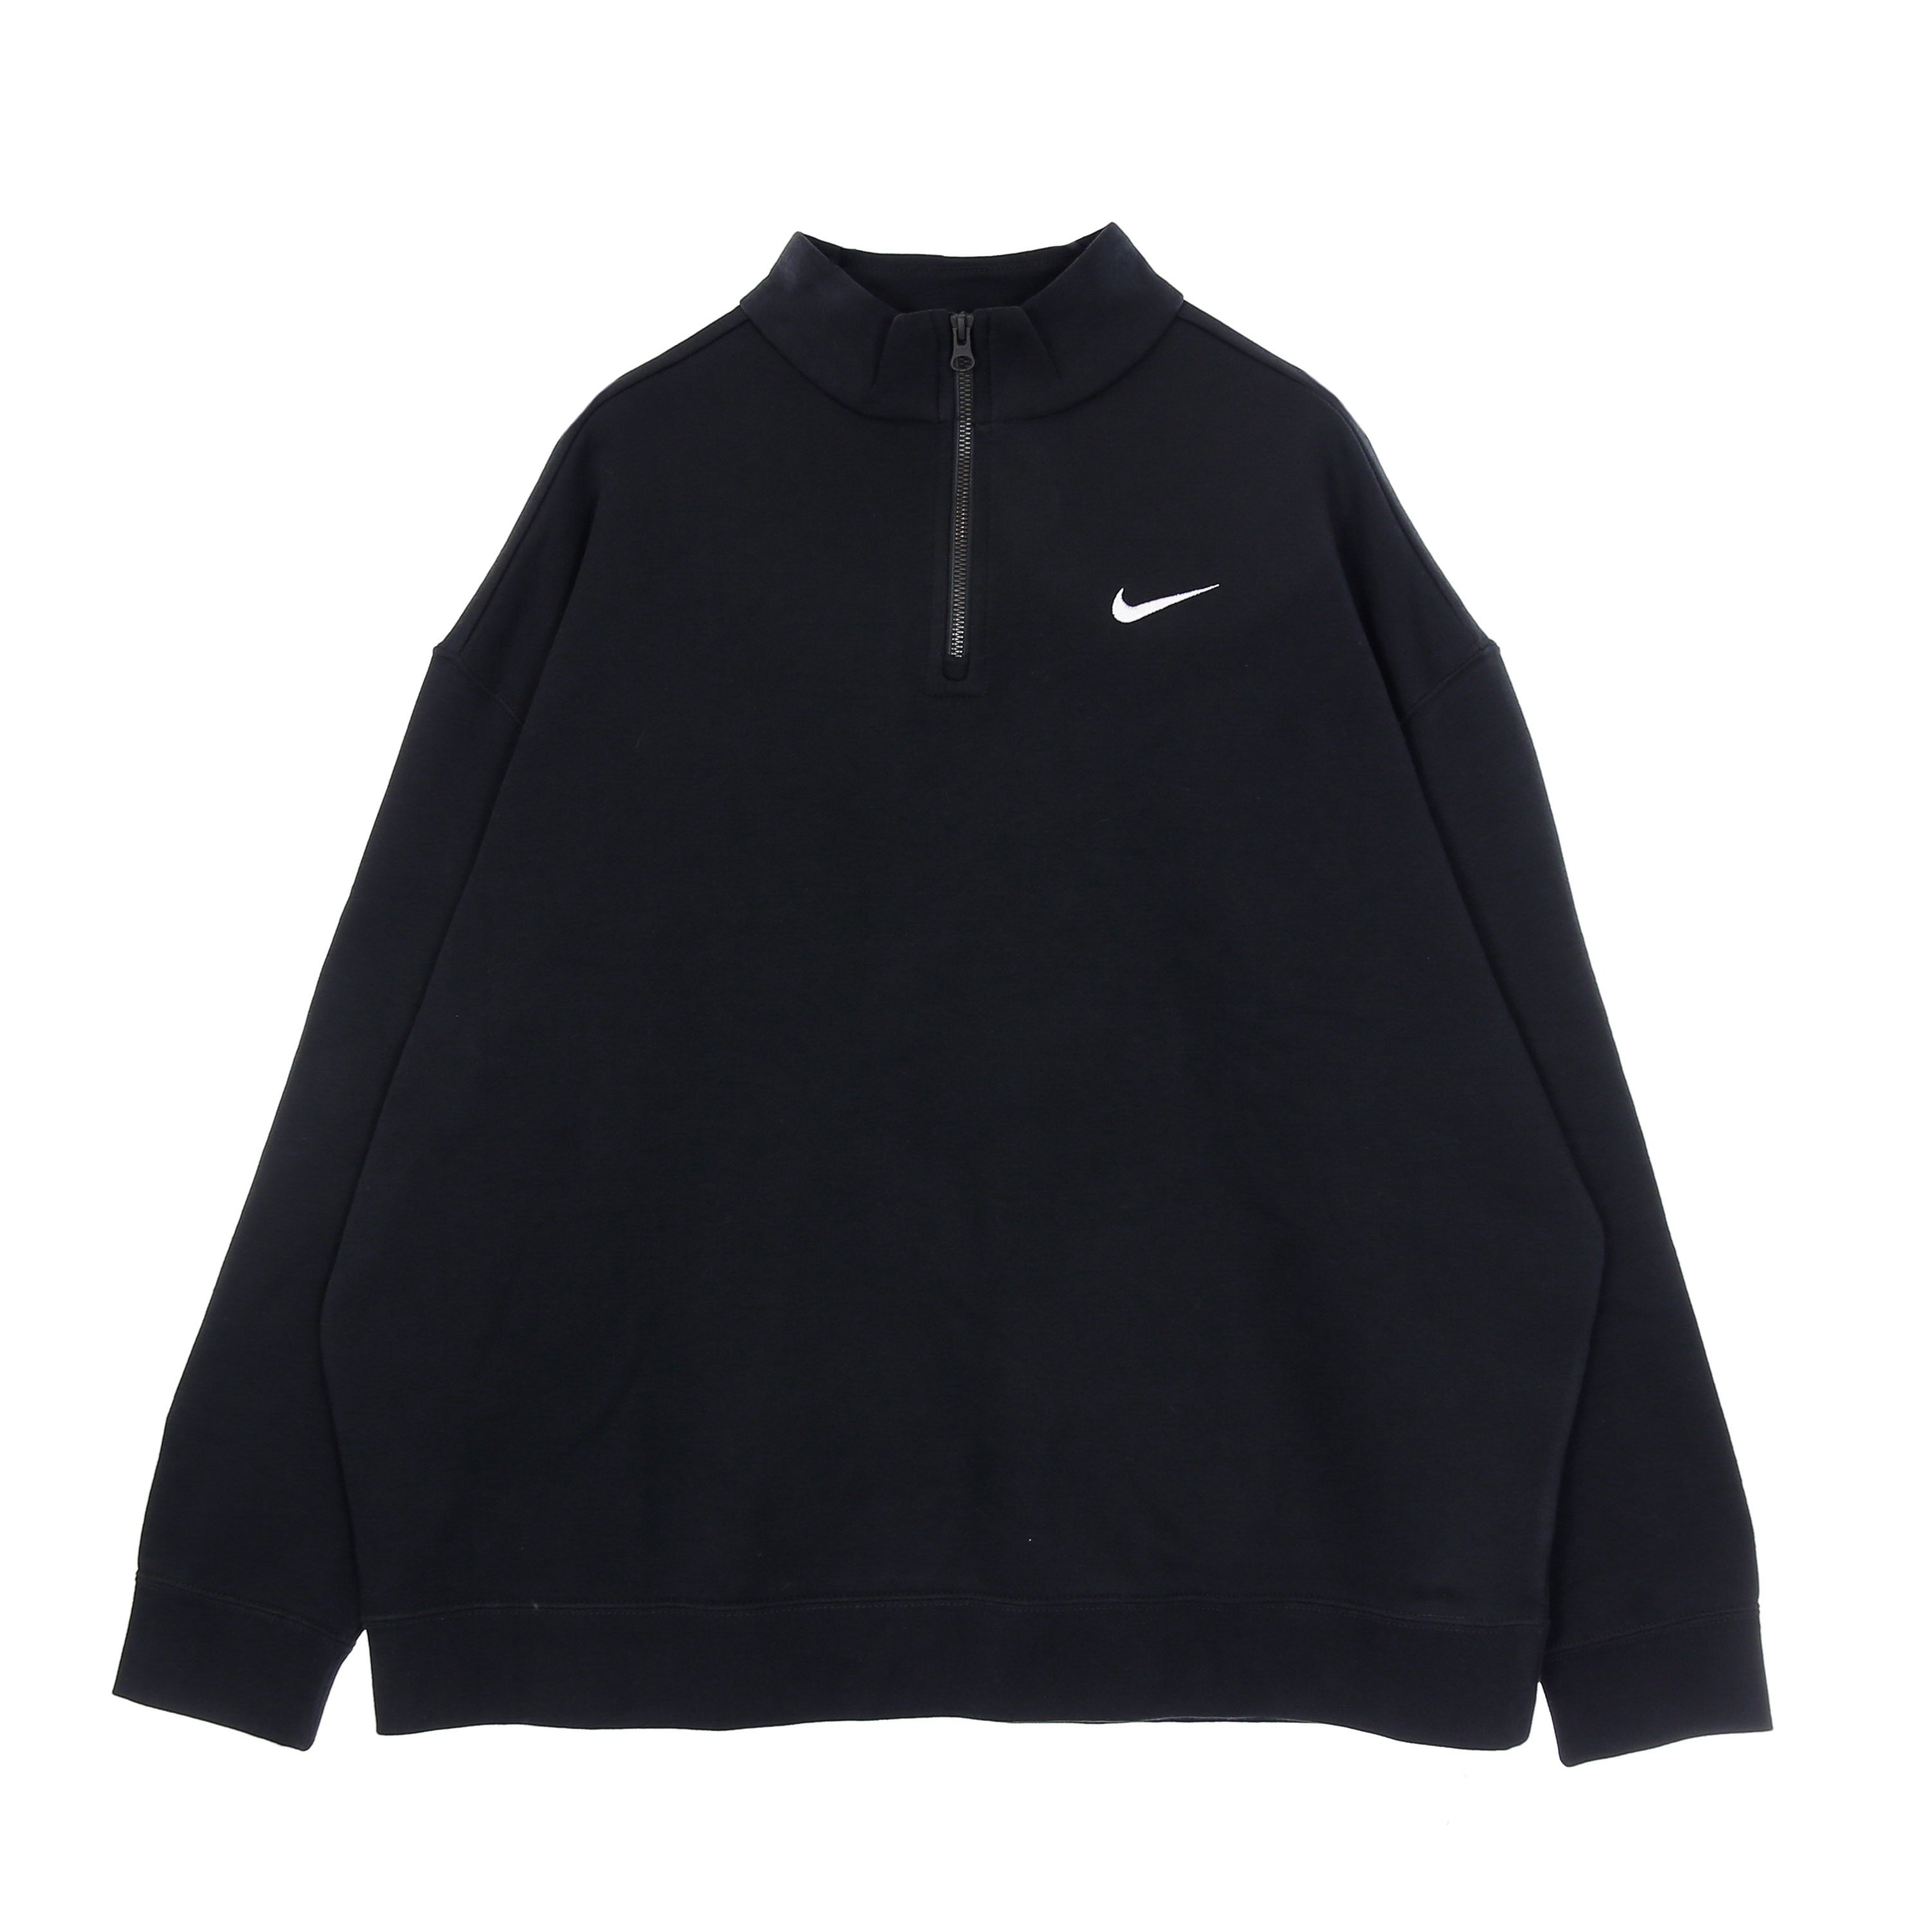 Nike, Felpa Collo Alto Donna W Sportswear Essential Classic Trend Fleece Quarter Zip, Black/white